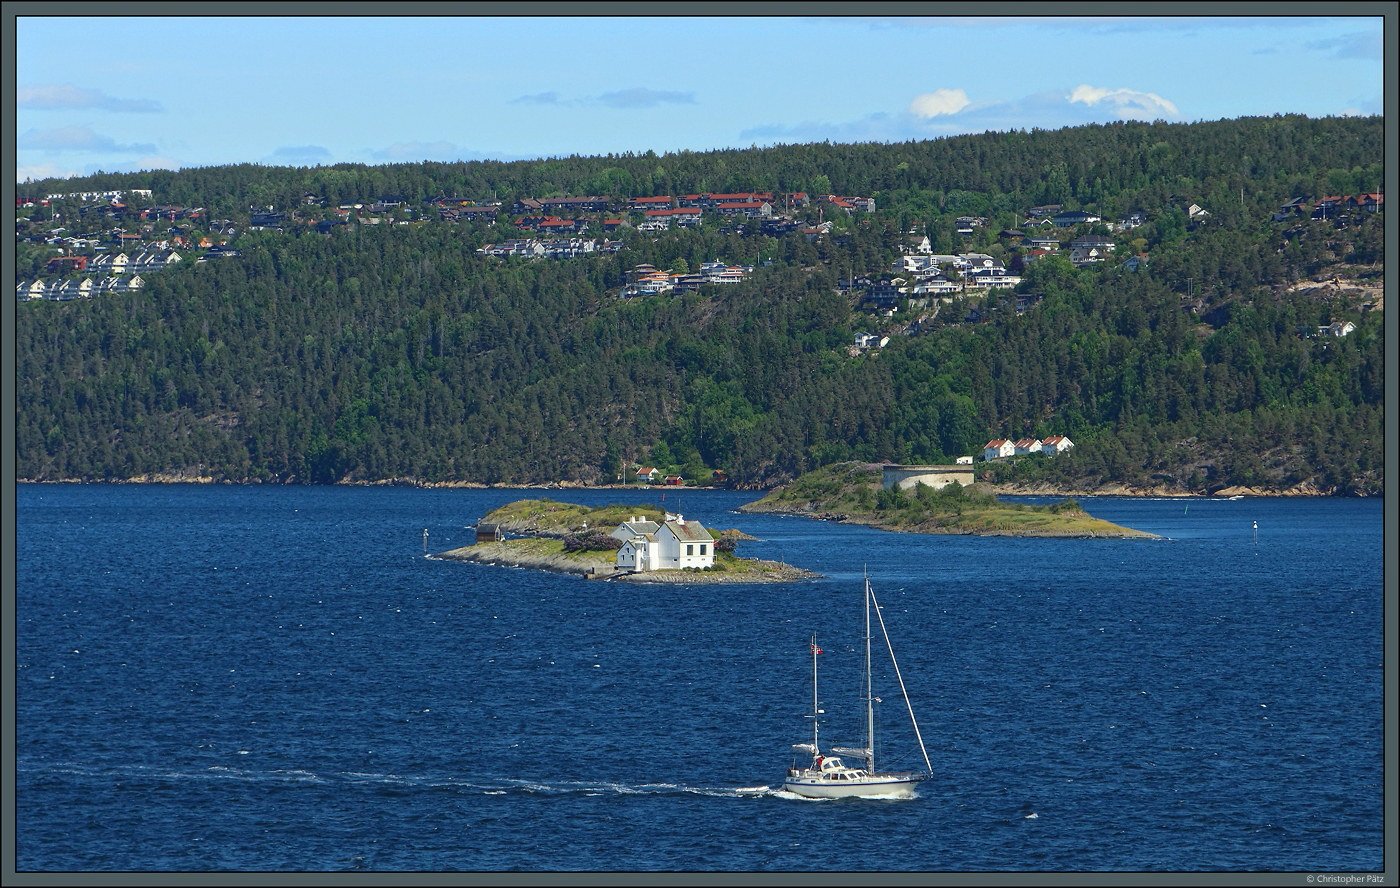 Im Olsofjord liegt die Inselgruppe Steilene. Vorn links liegt die Insel Fyrsteila mit ihrem Leuchtturm. Dahinter liegt die als Vogelschutzgebiet genutzte Insel Knerten. Der groe Fischltank rechts erinnert an die industrielle Nutzung auf der Insel Storsteilene. (28.05.2023)